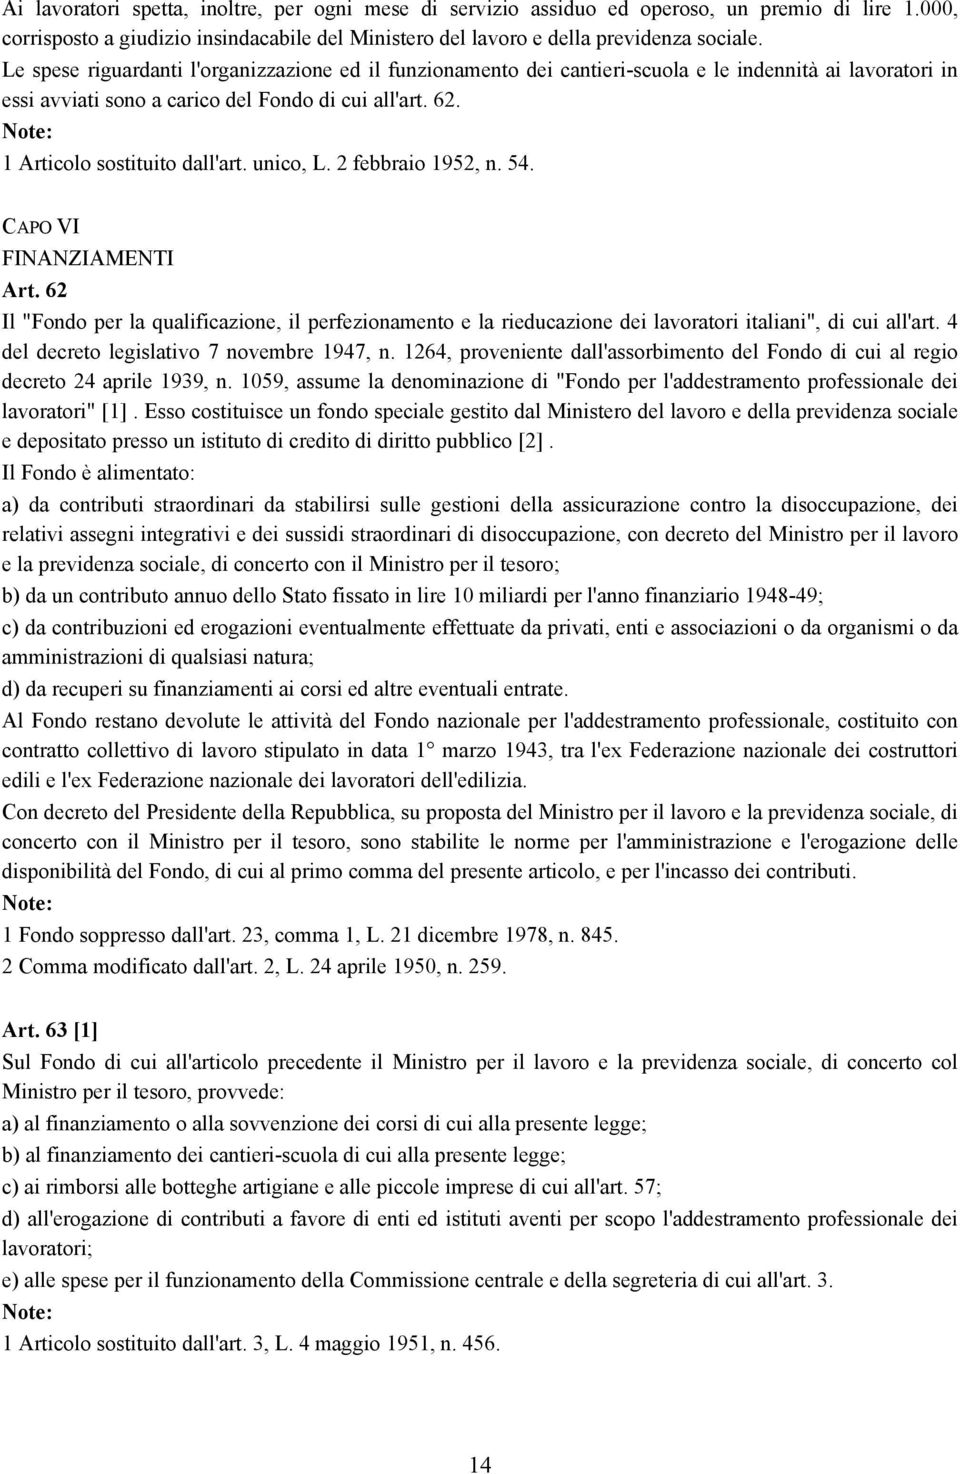 unico, L. 2 febbraio 1952, n. 54. CAPO VI FINANZIAMENTI Art. 62 Il "Fondo per la qualificazione, il perfezionamento e la rieducazione dei lavoratori italiani", di cui all'art.